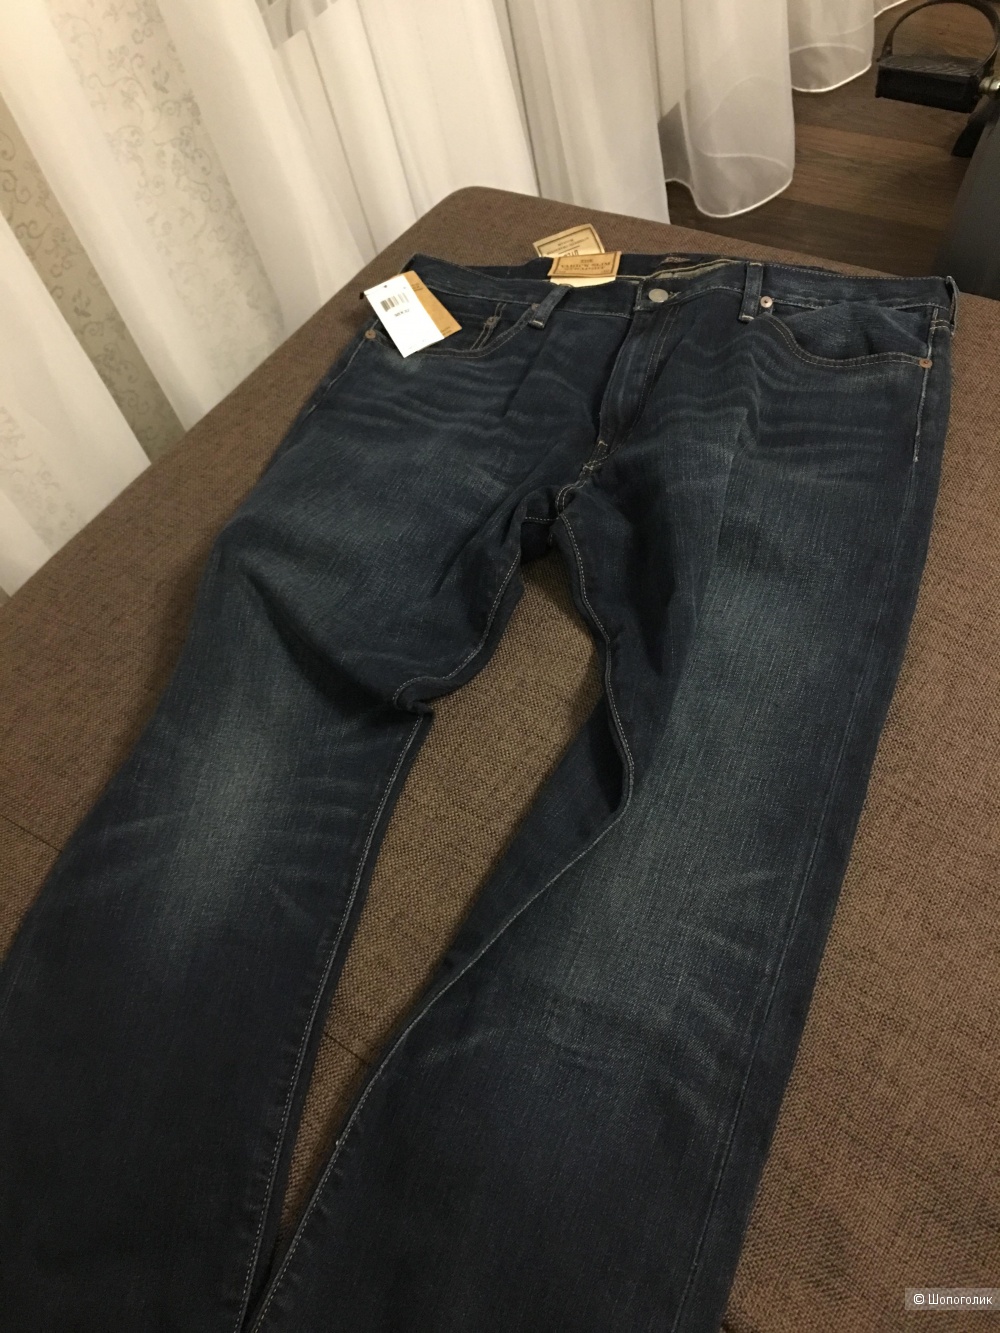 Мужские джинсы Polo Ralph Lauren размер 38